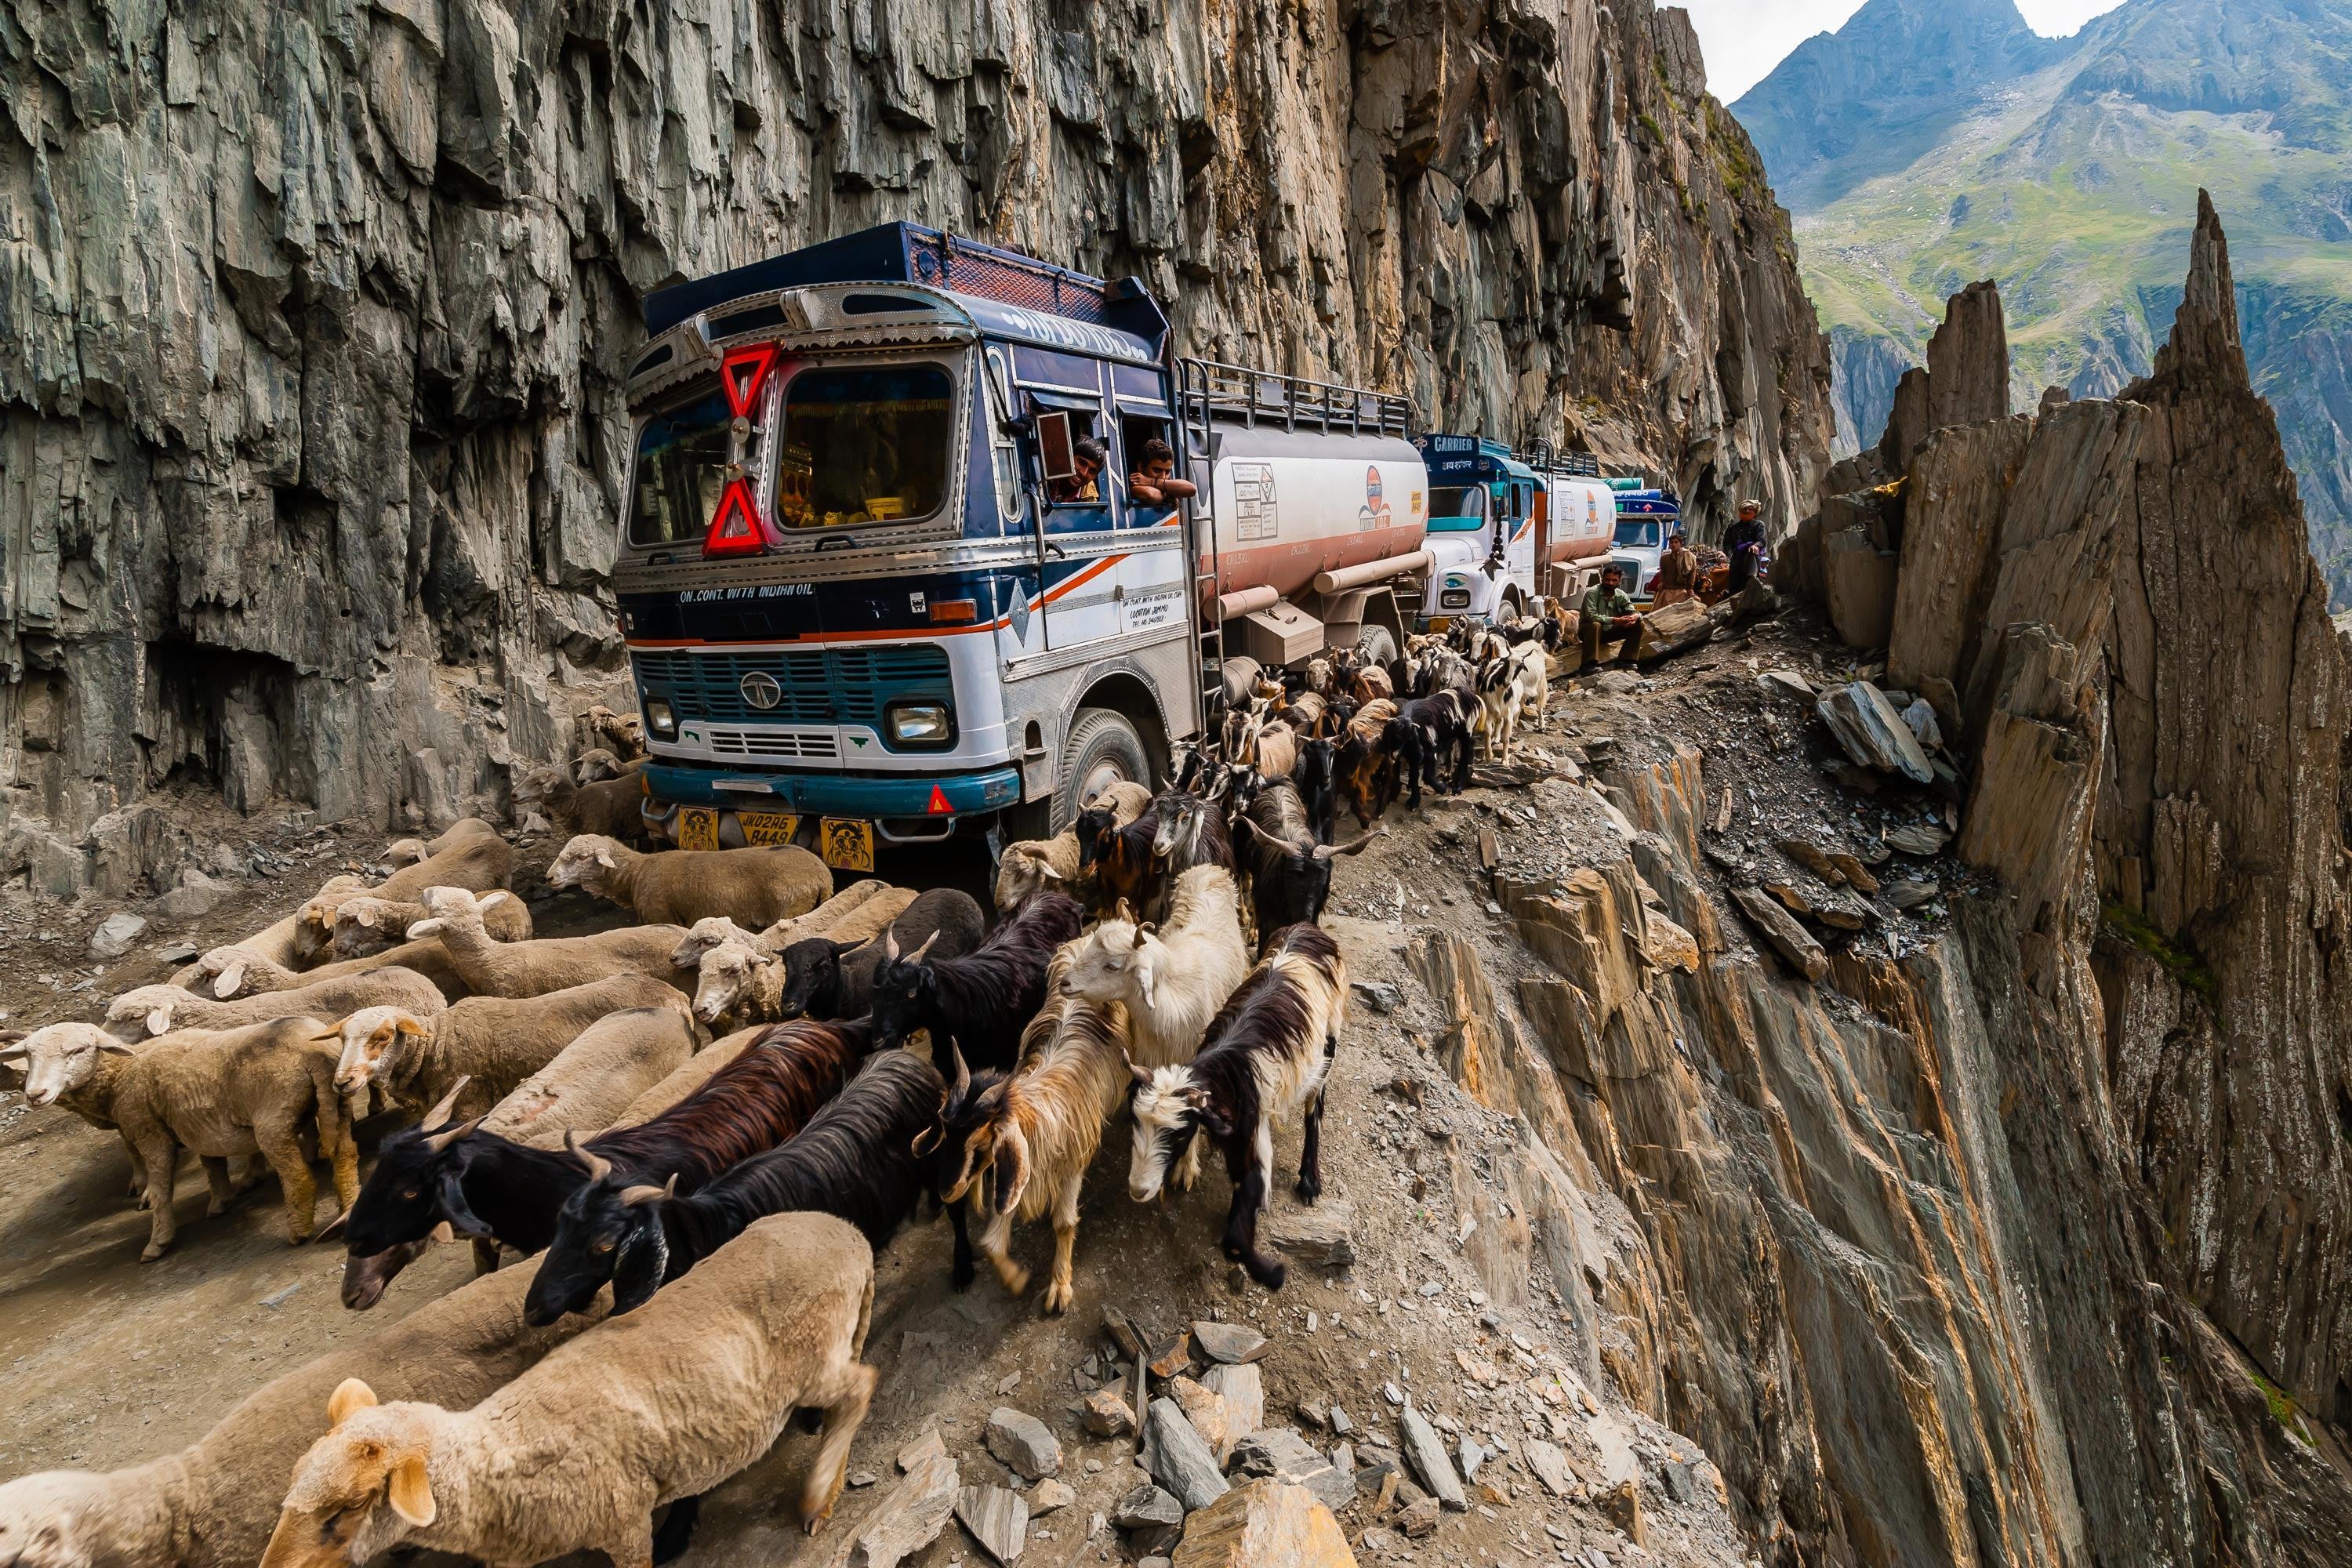 World most dangerous. Перевал зоджи ла, Индия. Шоссе Карнали, Непал. Зожи ла, Индия. Самая опасная дорога в мире.